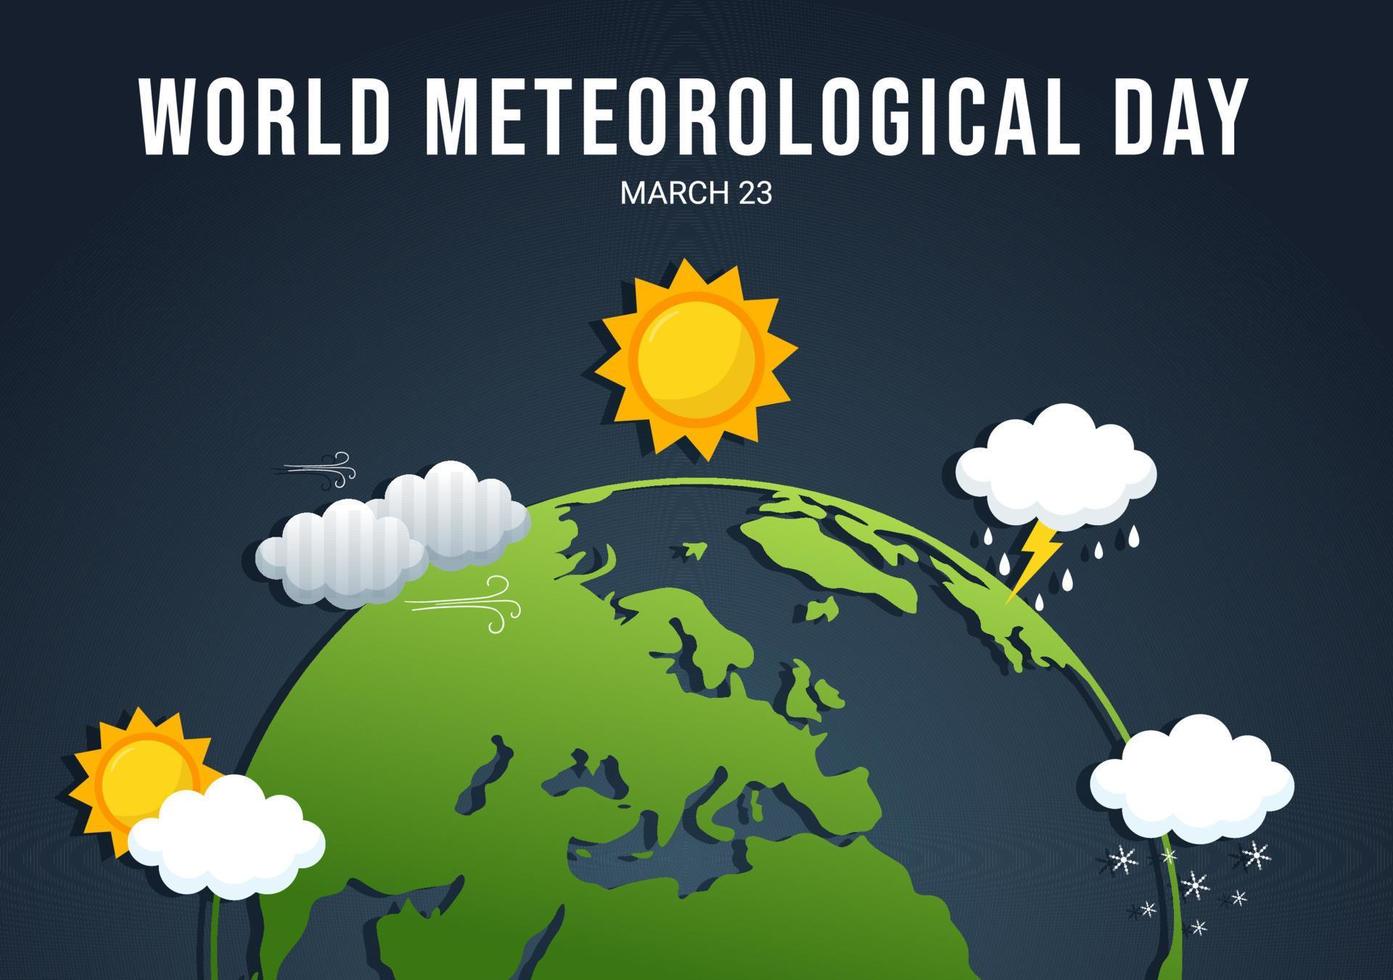 illustration de la journée météorologique mondiale avec la science de la météorologie et la recherche de la météo dans un dessin animé plat dessiné à la main pour les modèles de page de destination vecteur